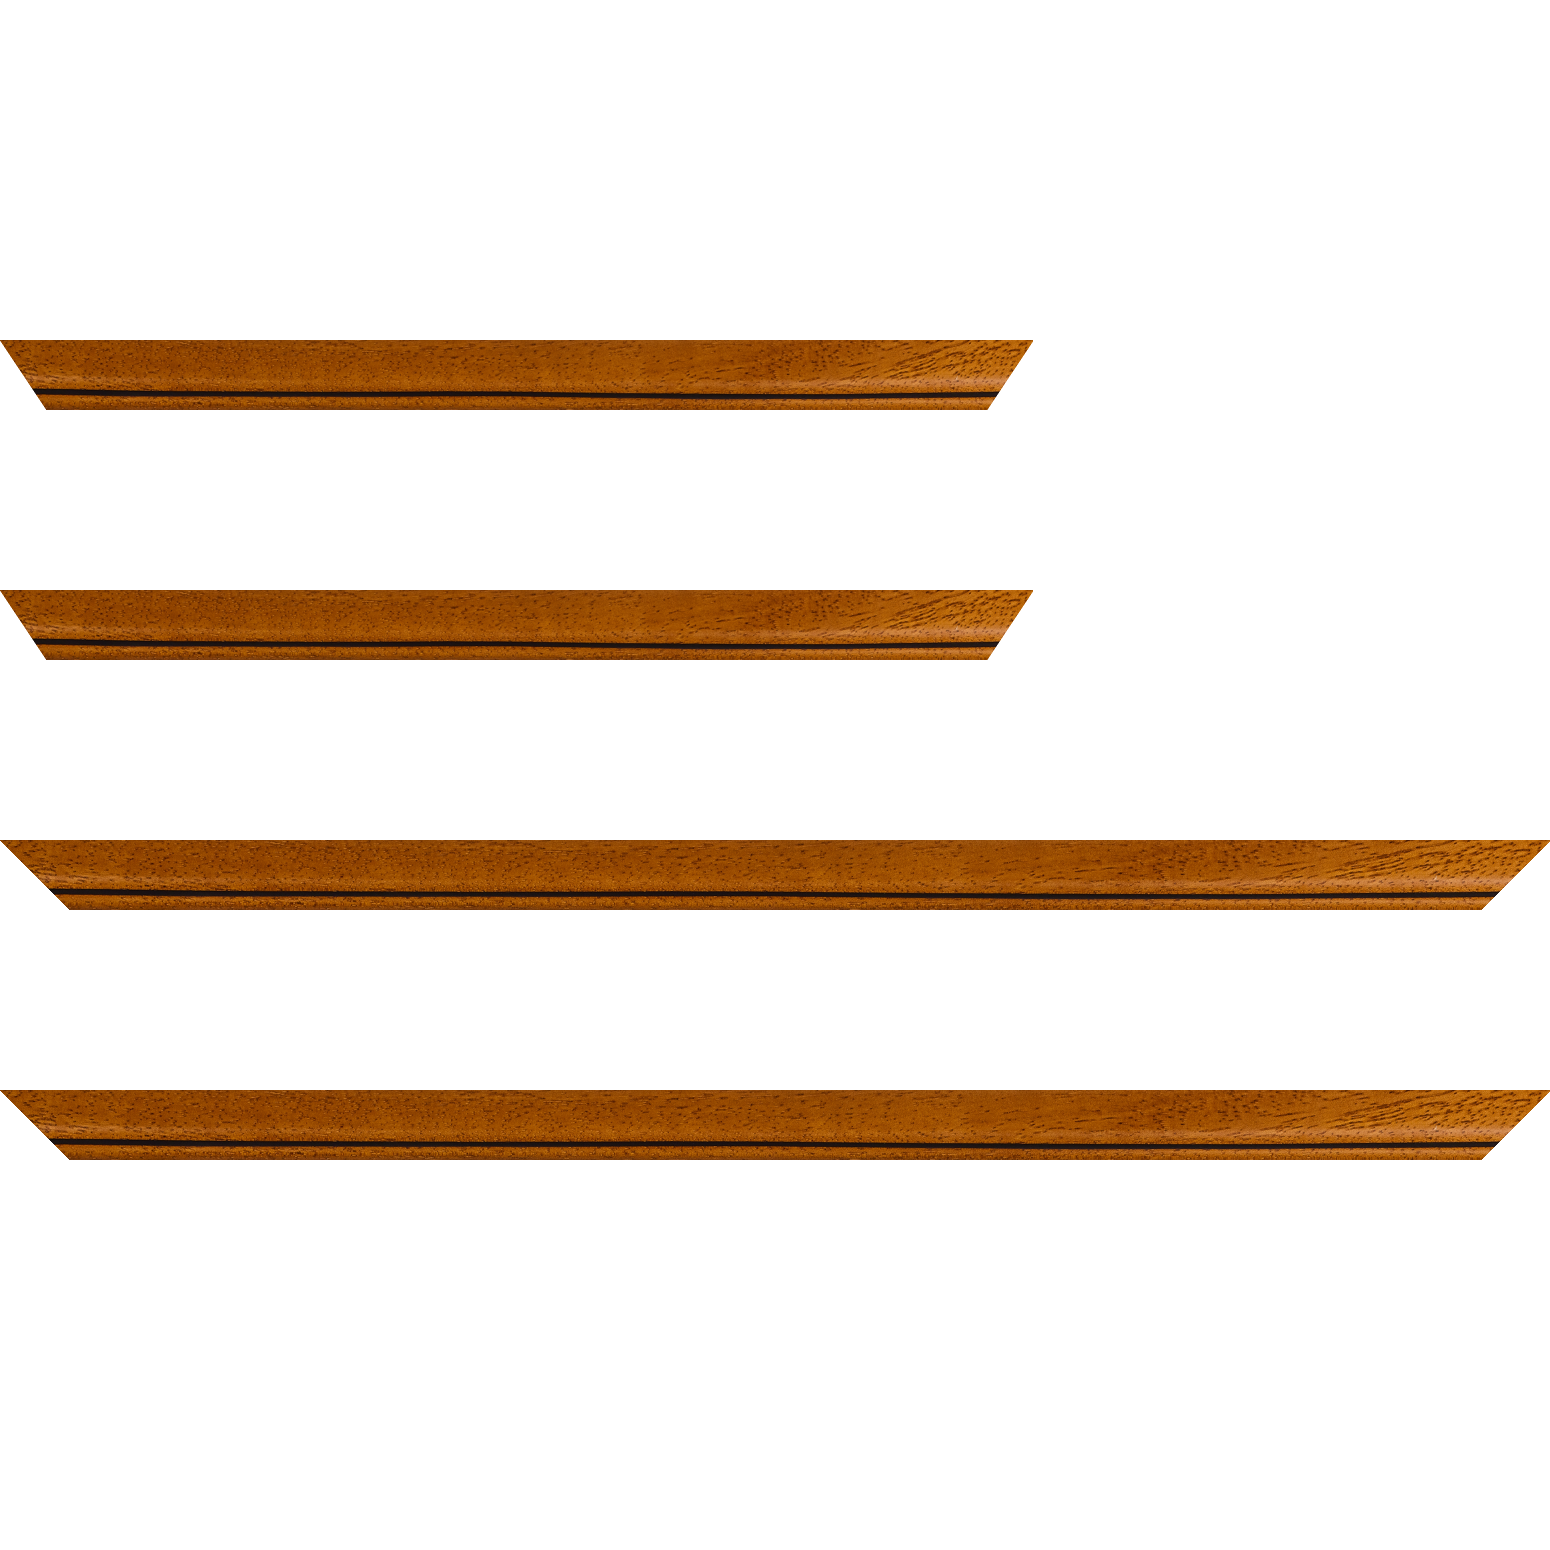 Baguette bois profil bombé largeur 2.4cm couleur marron ton bois satiné filet noir - 59.4x84.1